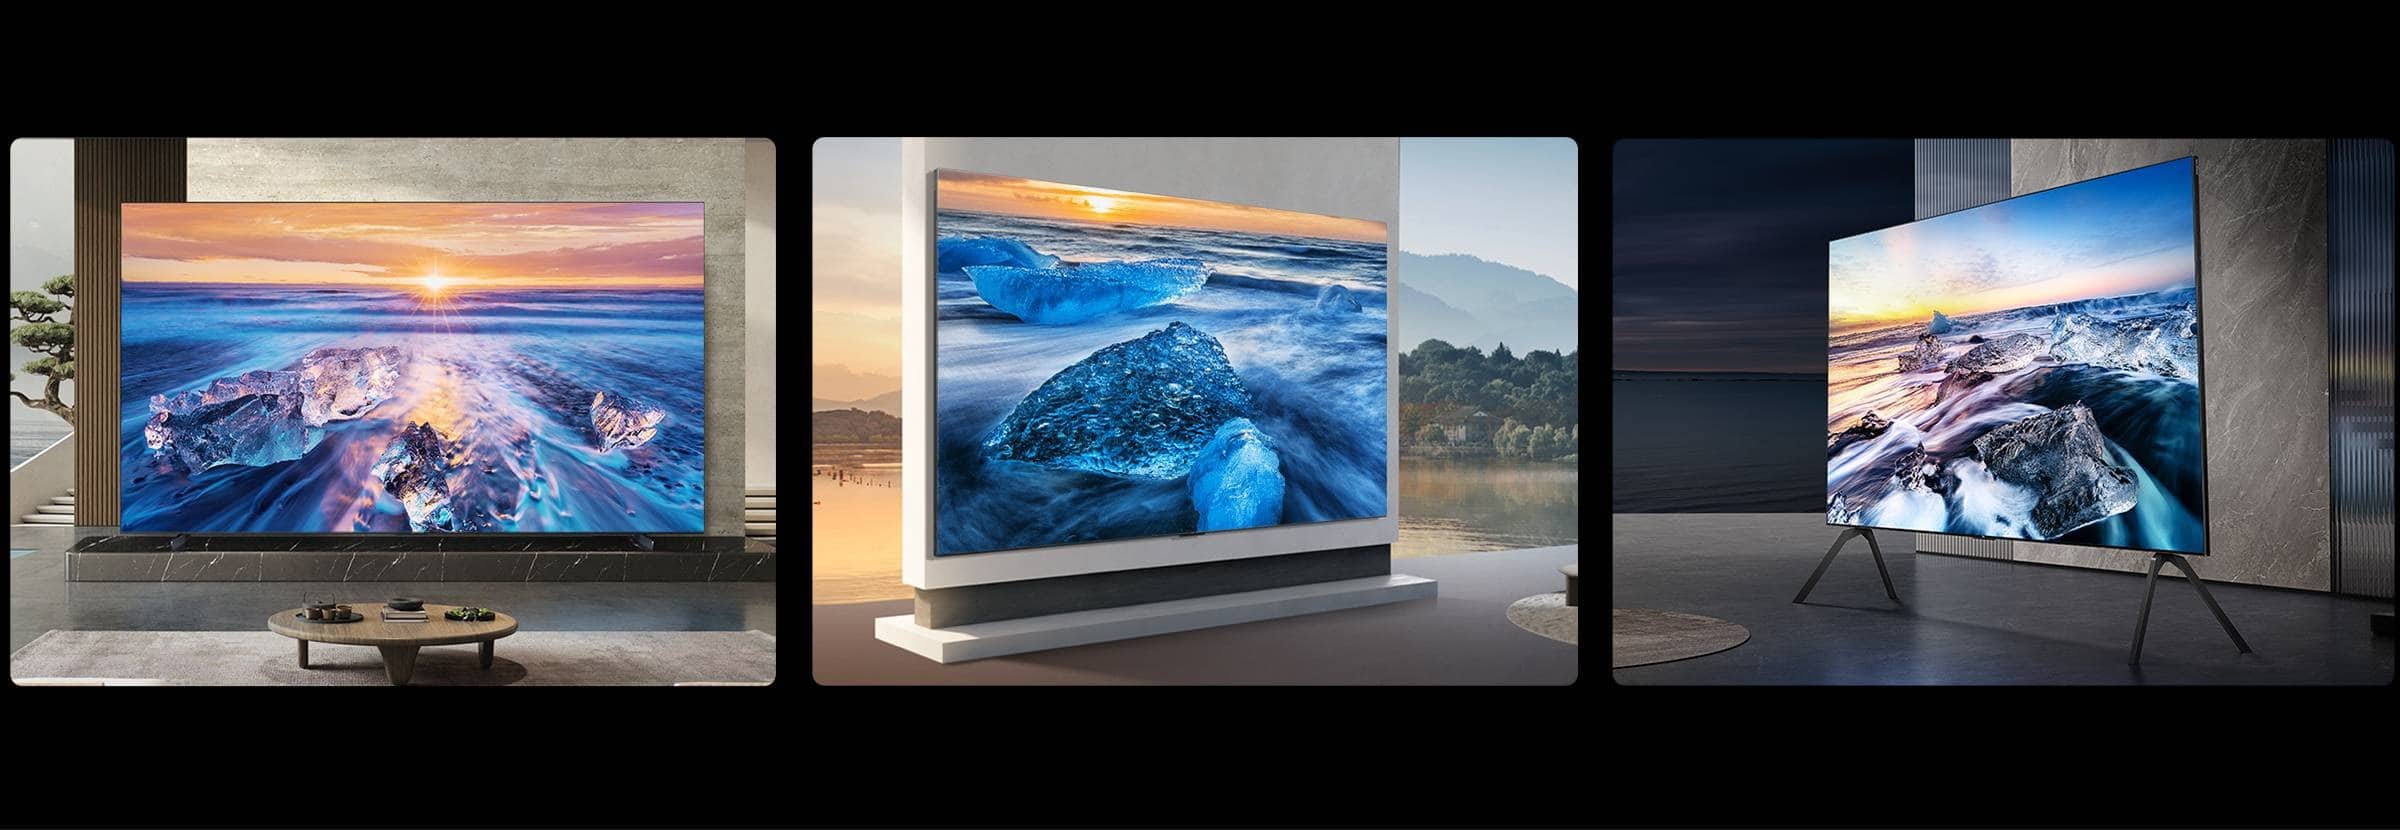 TCL X11G Max QD Mini LED TV 1